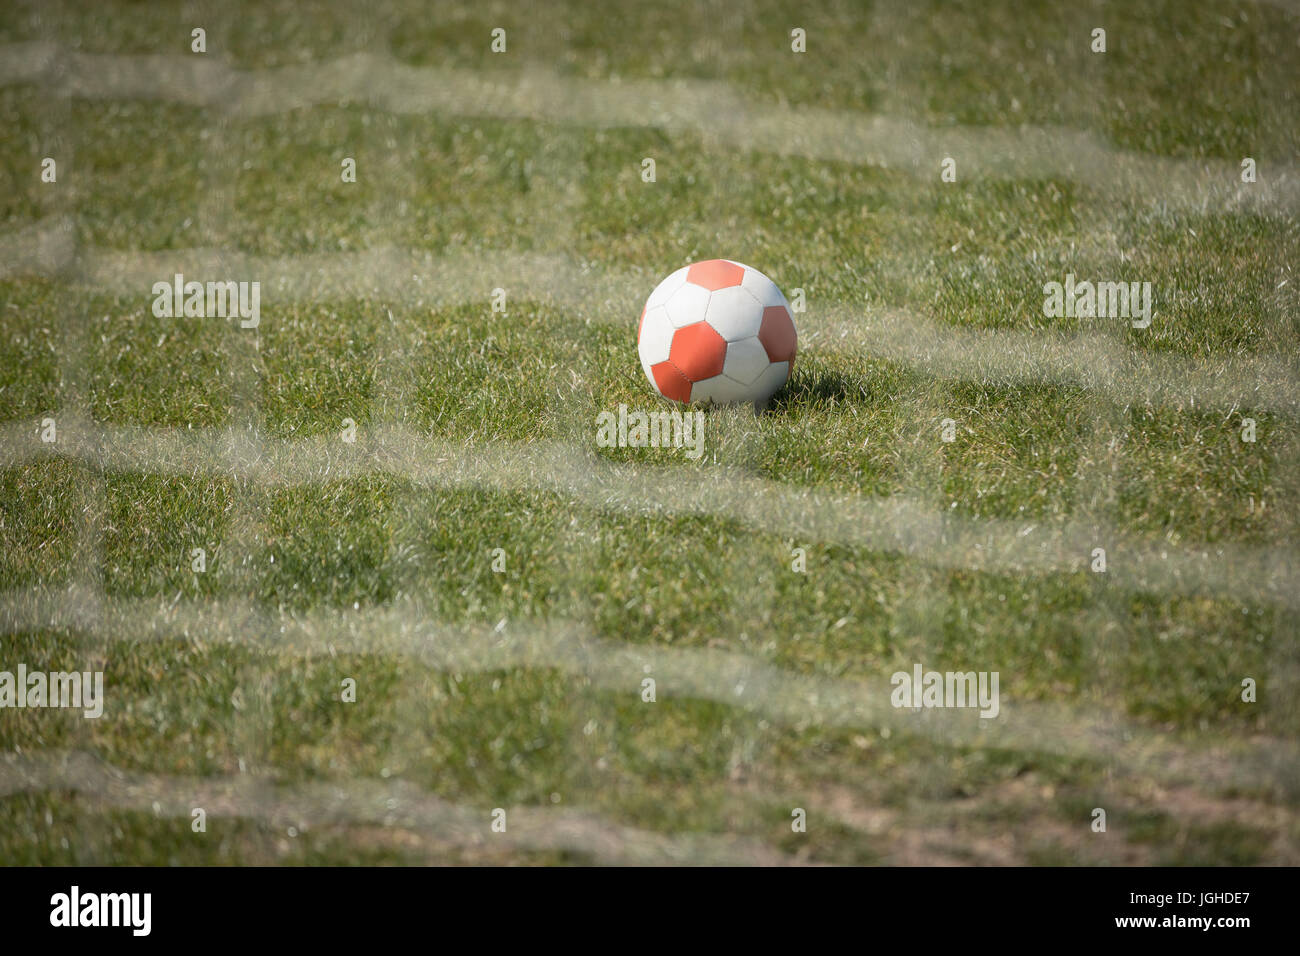 Fußball auf Spielfeld durch Net gesehen Stockfoto